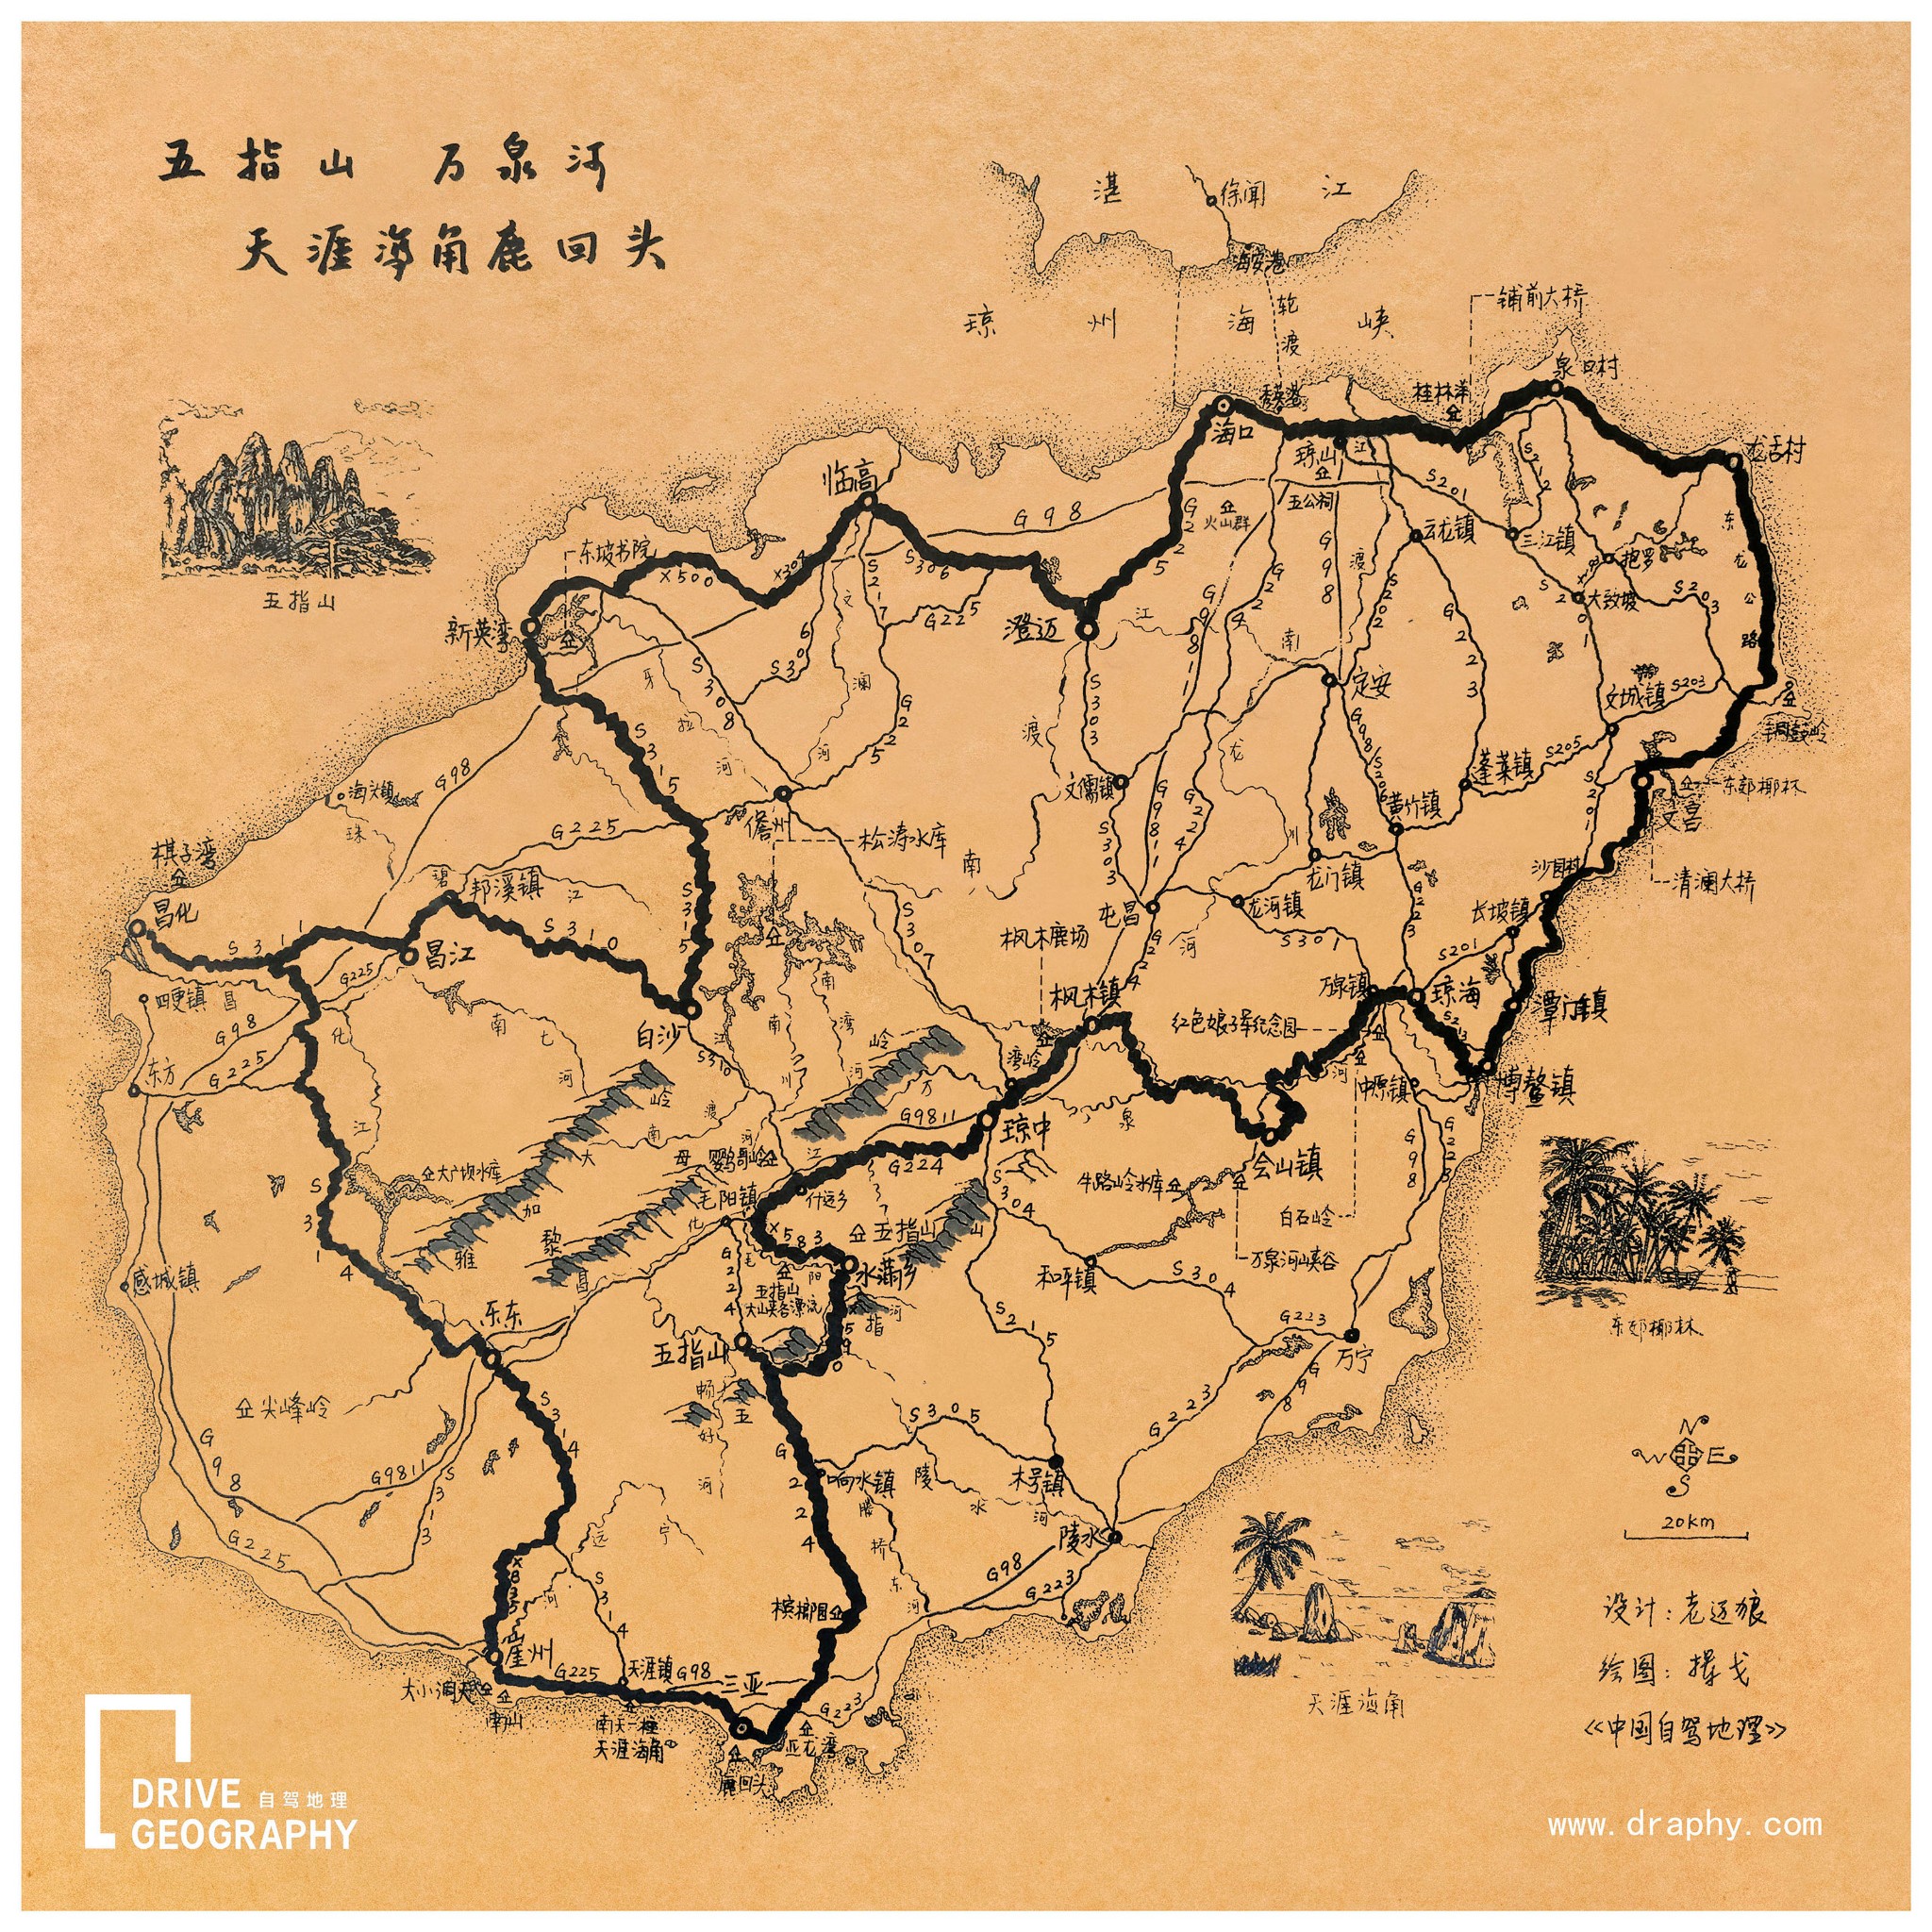 海南环岛自驾线路手绘地图,制作@《中国自驾